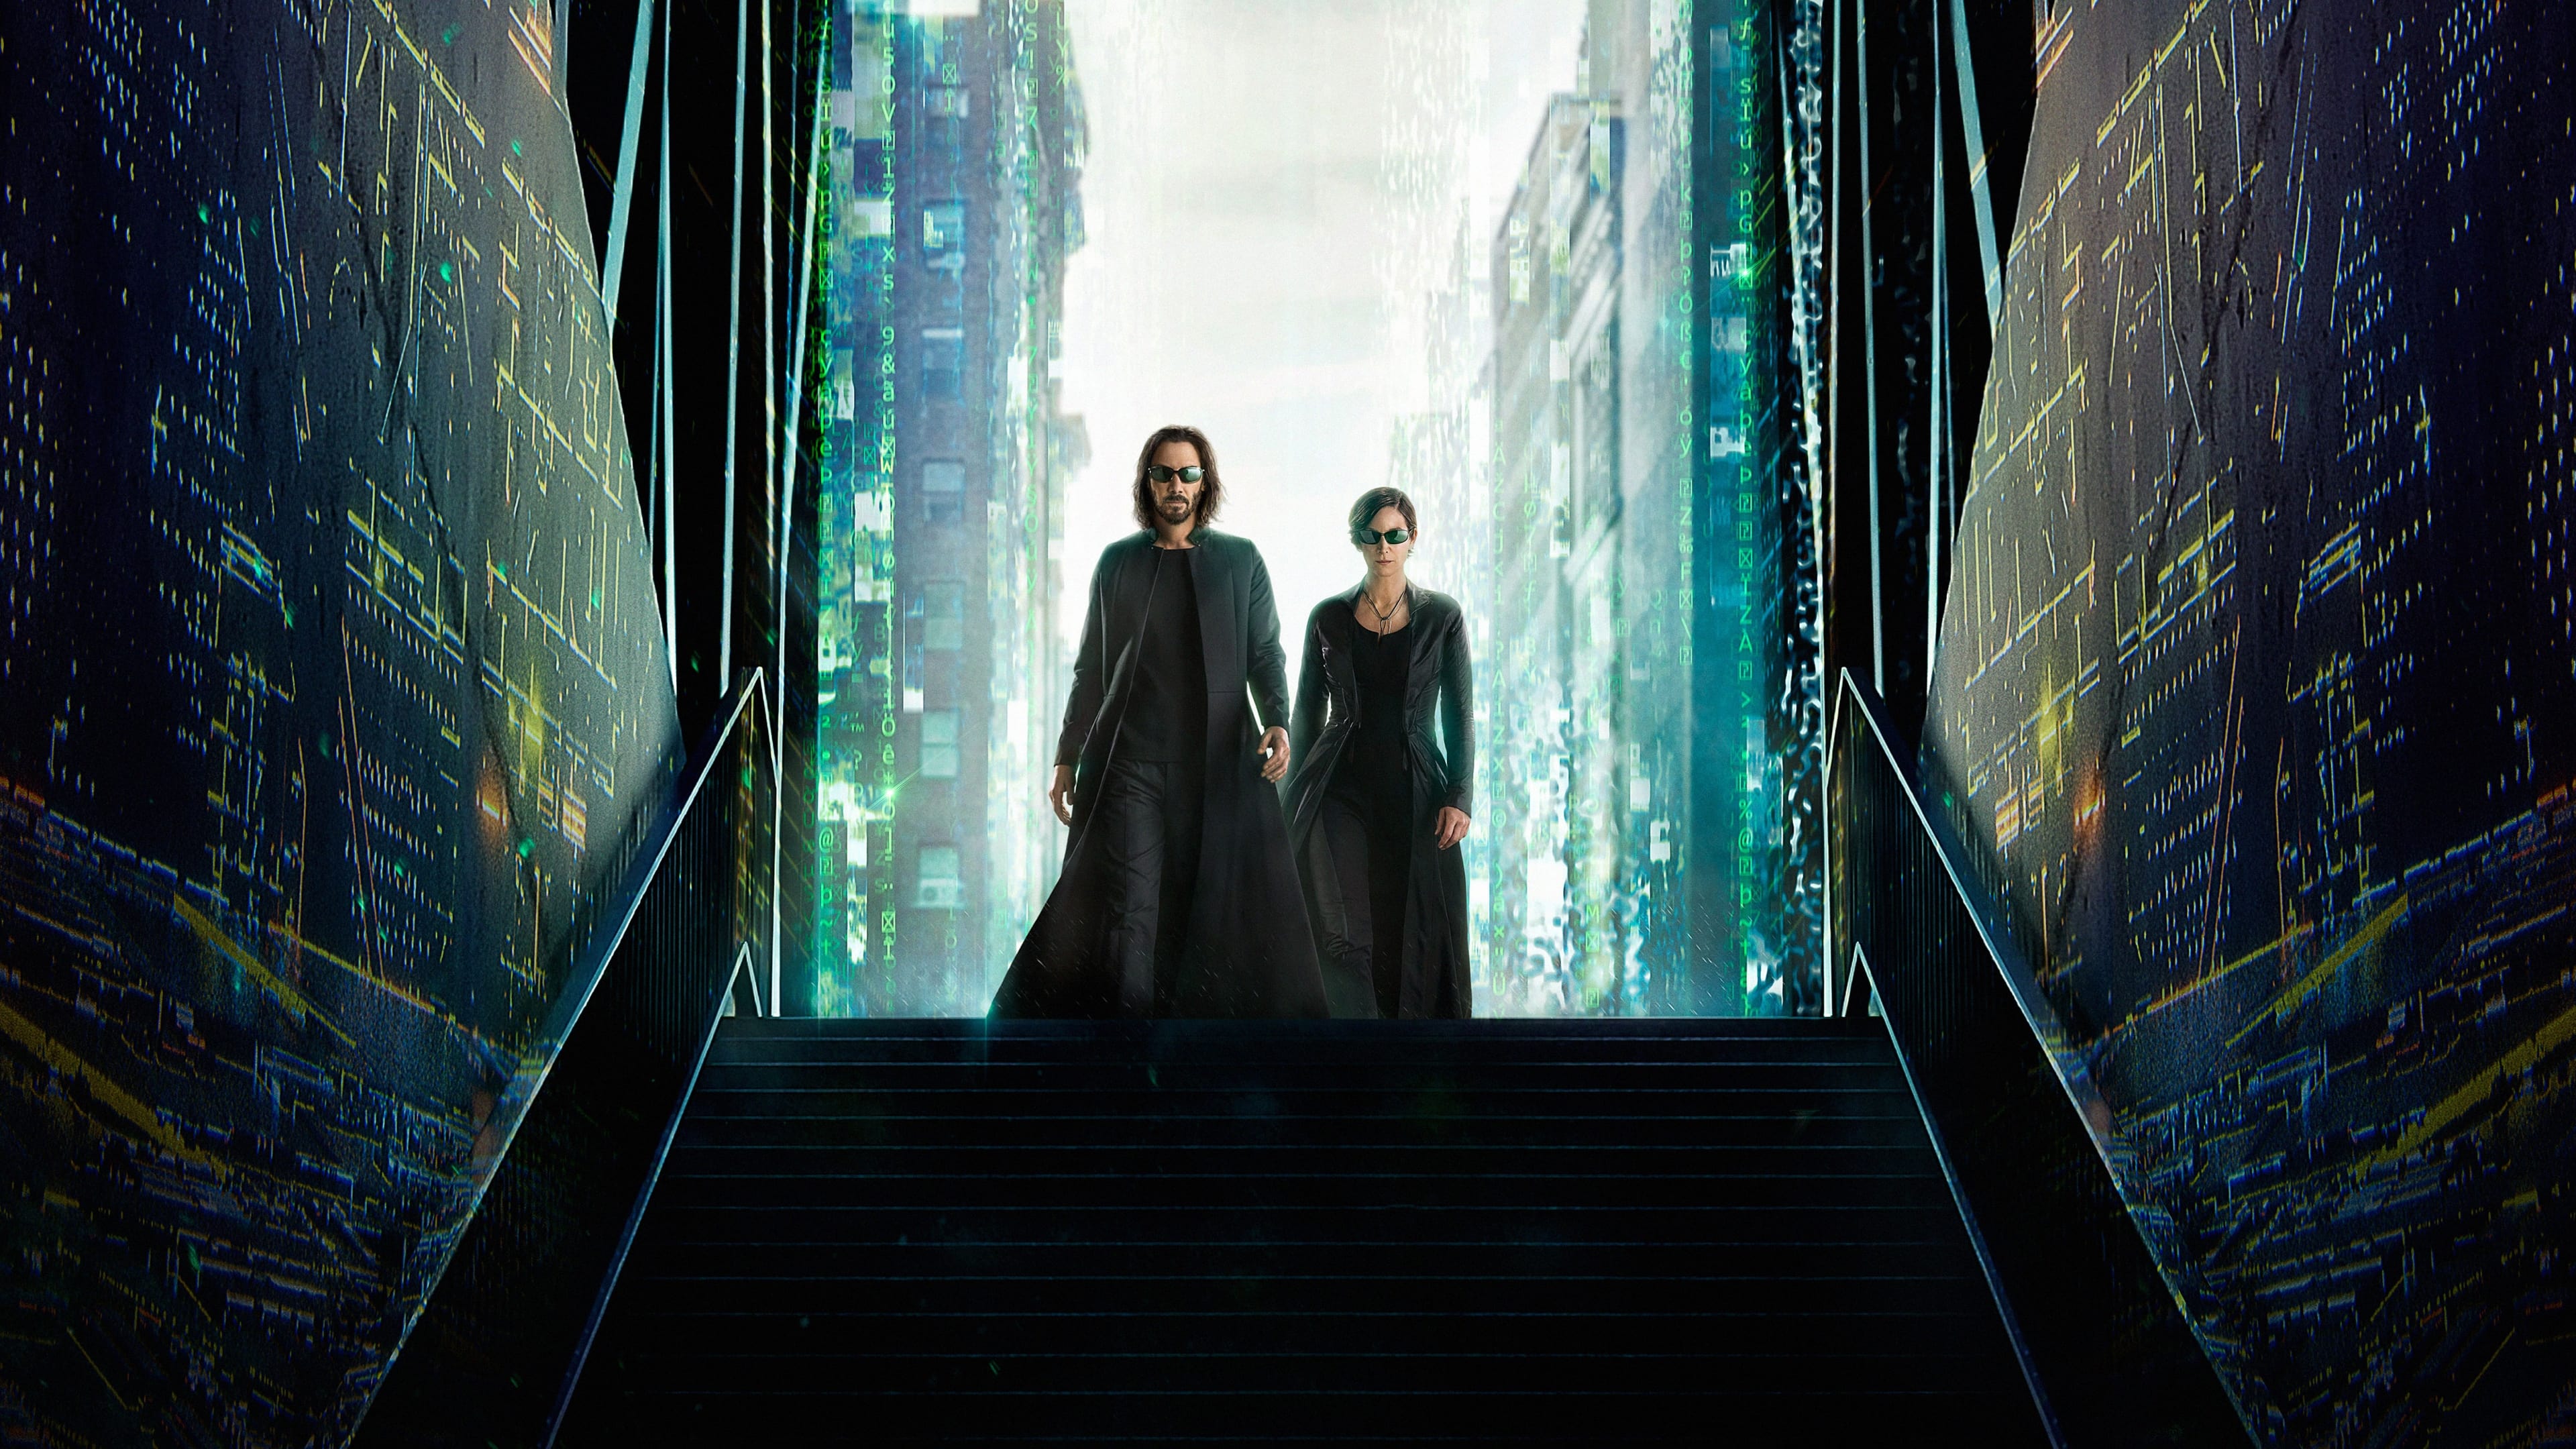 เดอะ เมทริกซ์ เรเซอเร็คชั่นส์ The Matrix Resurrection ออนไลน์โดยสมบูรณ์ในปี 2021